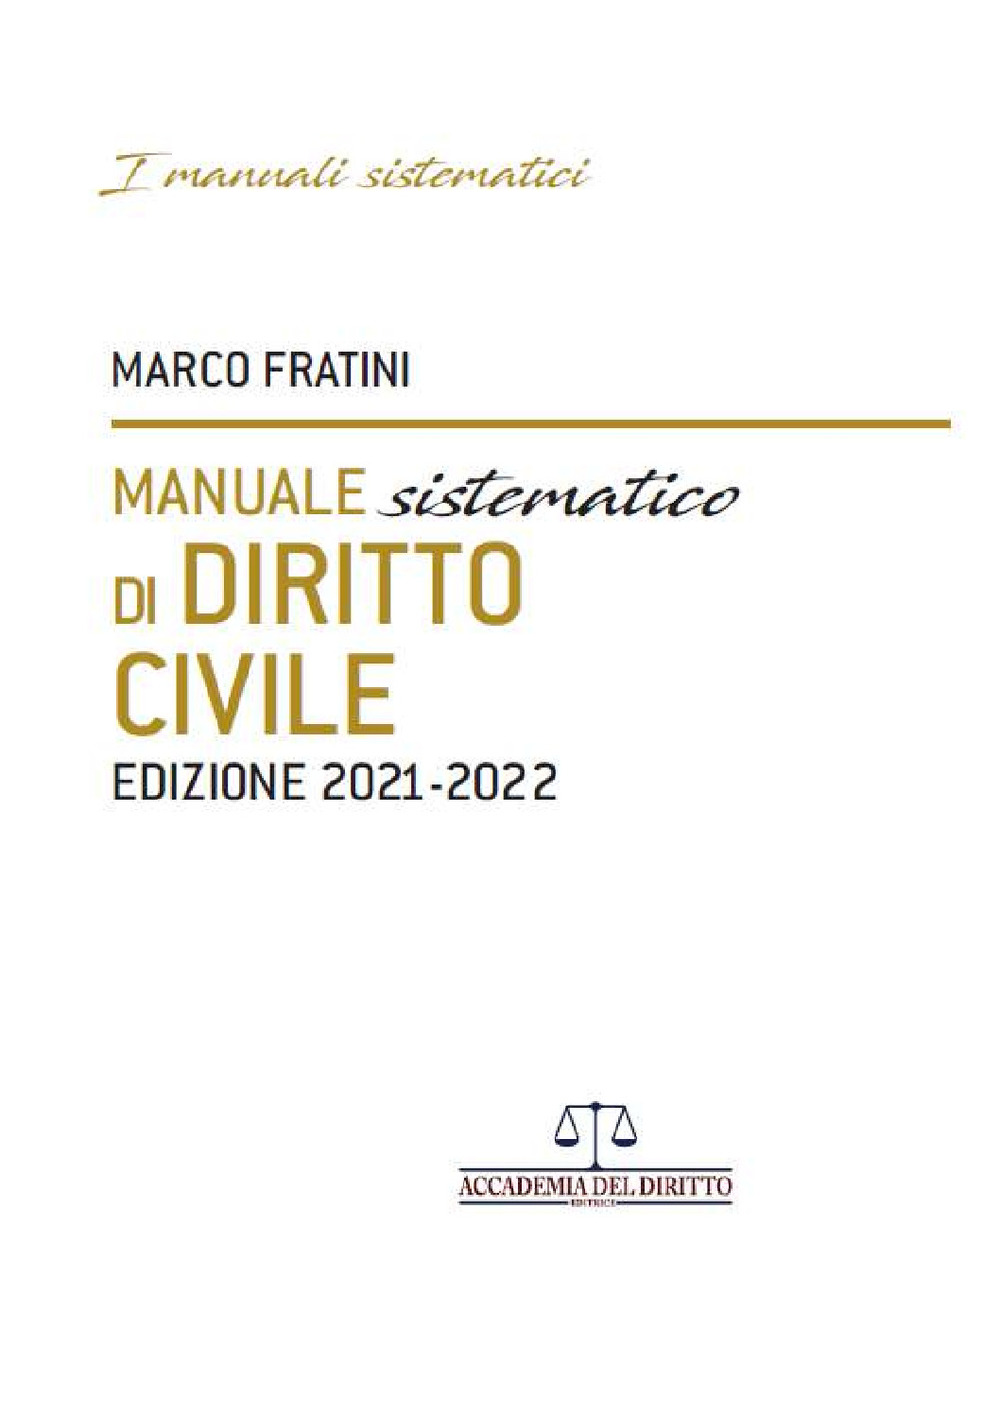 Manuale sistematico di diritto civile 2021-2022